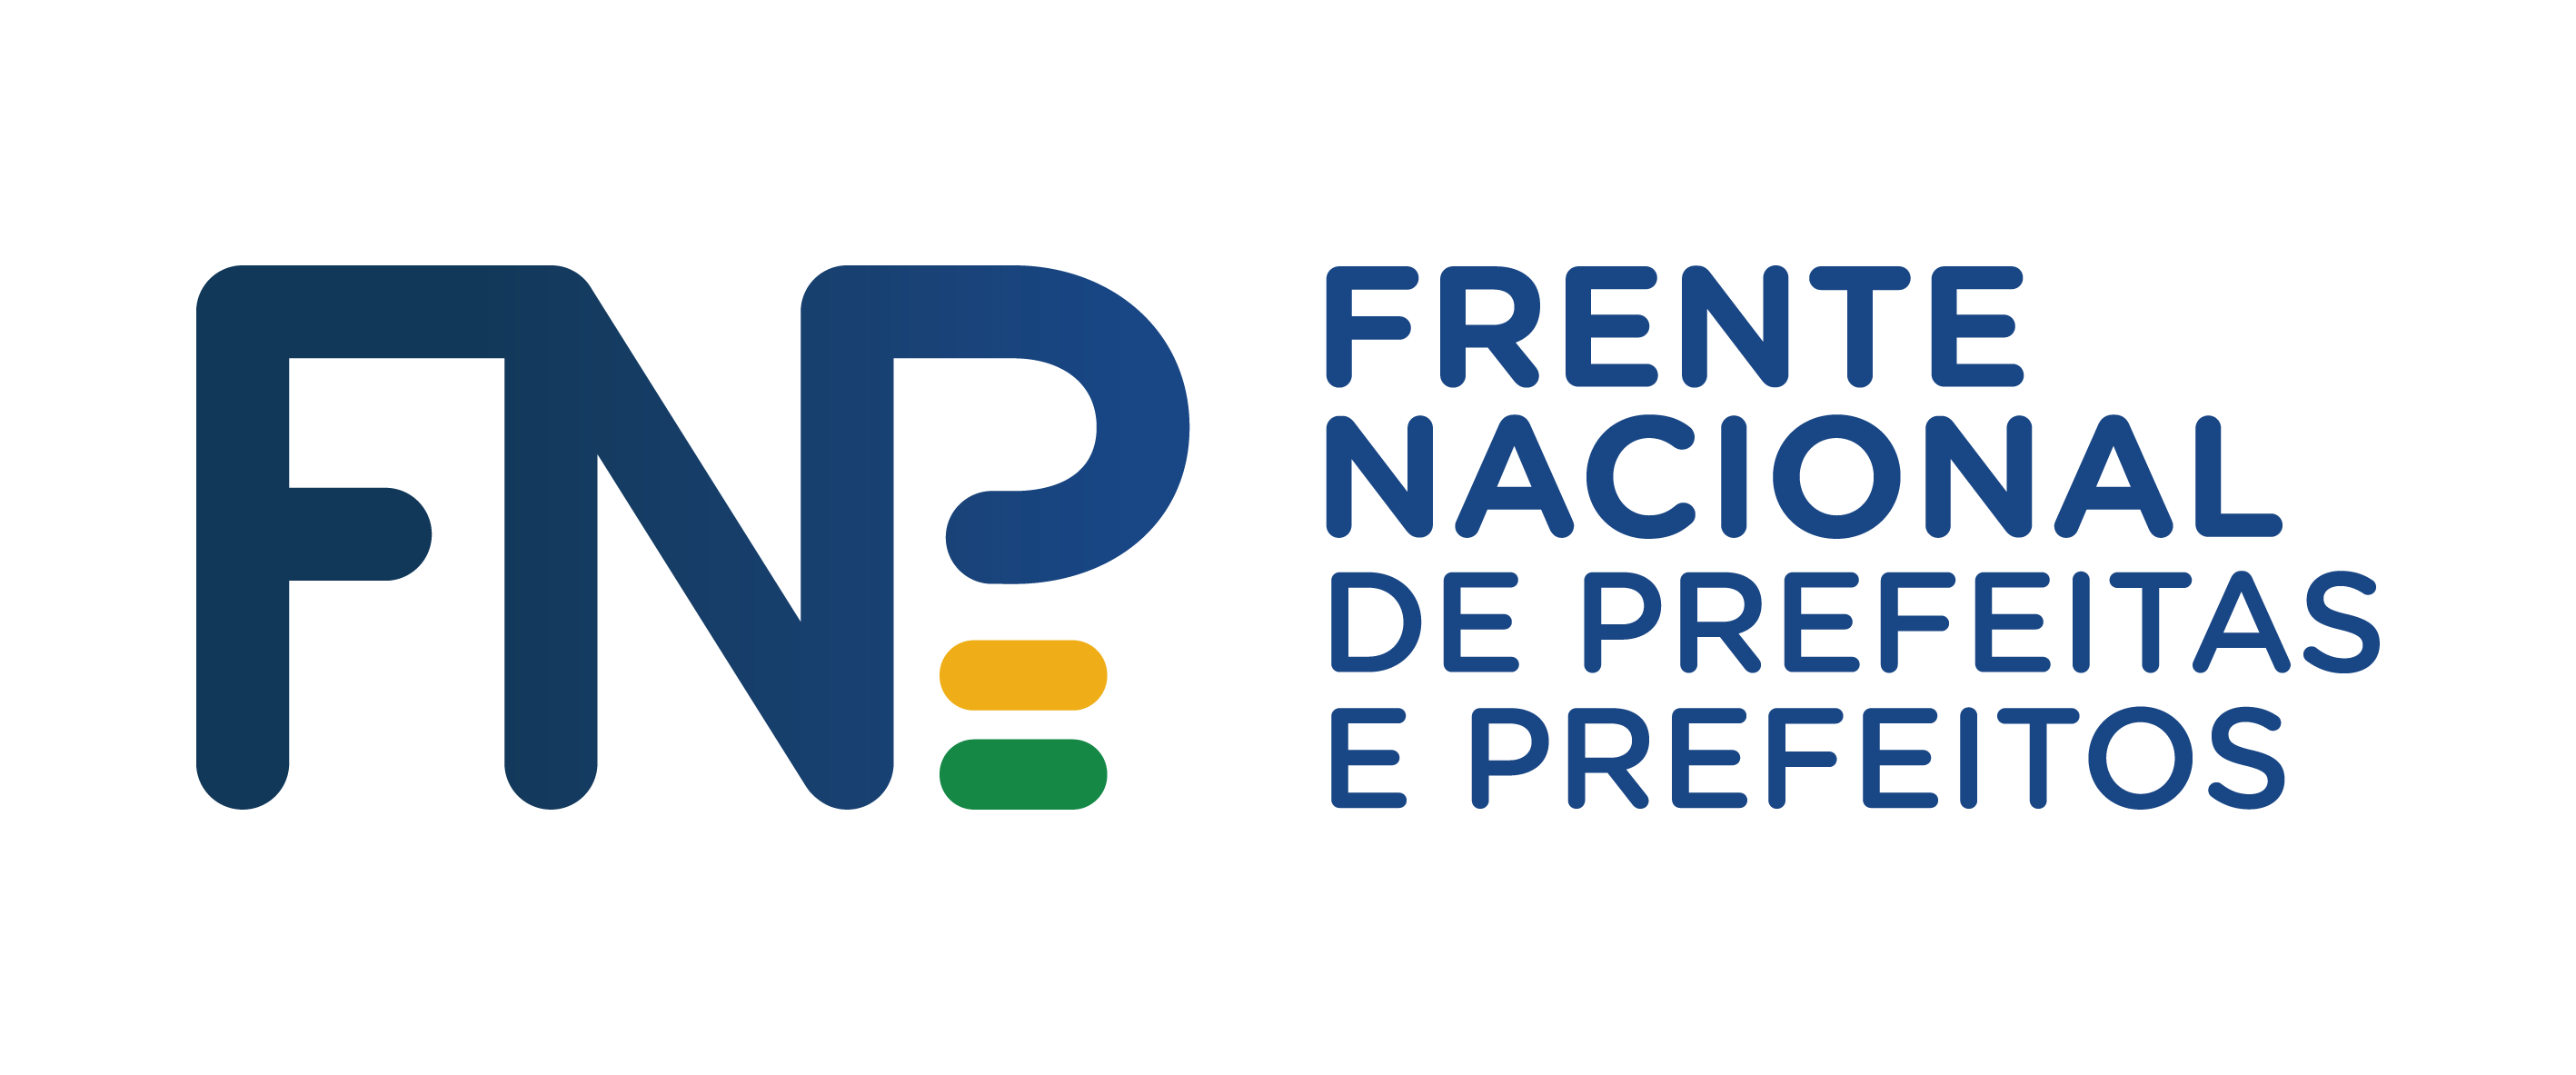 Frente Nacional de Prefeitas e Prefeitos